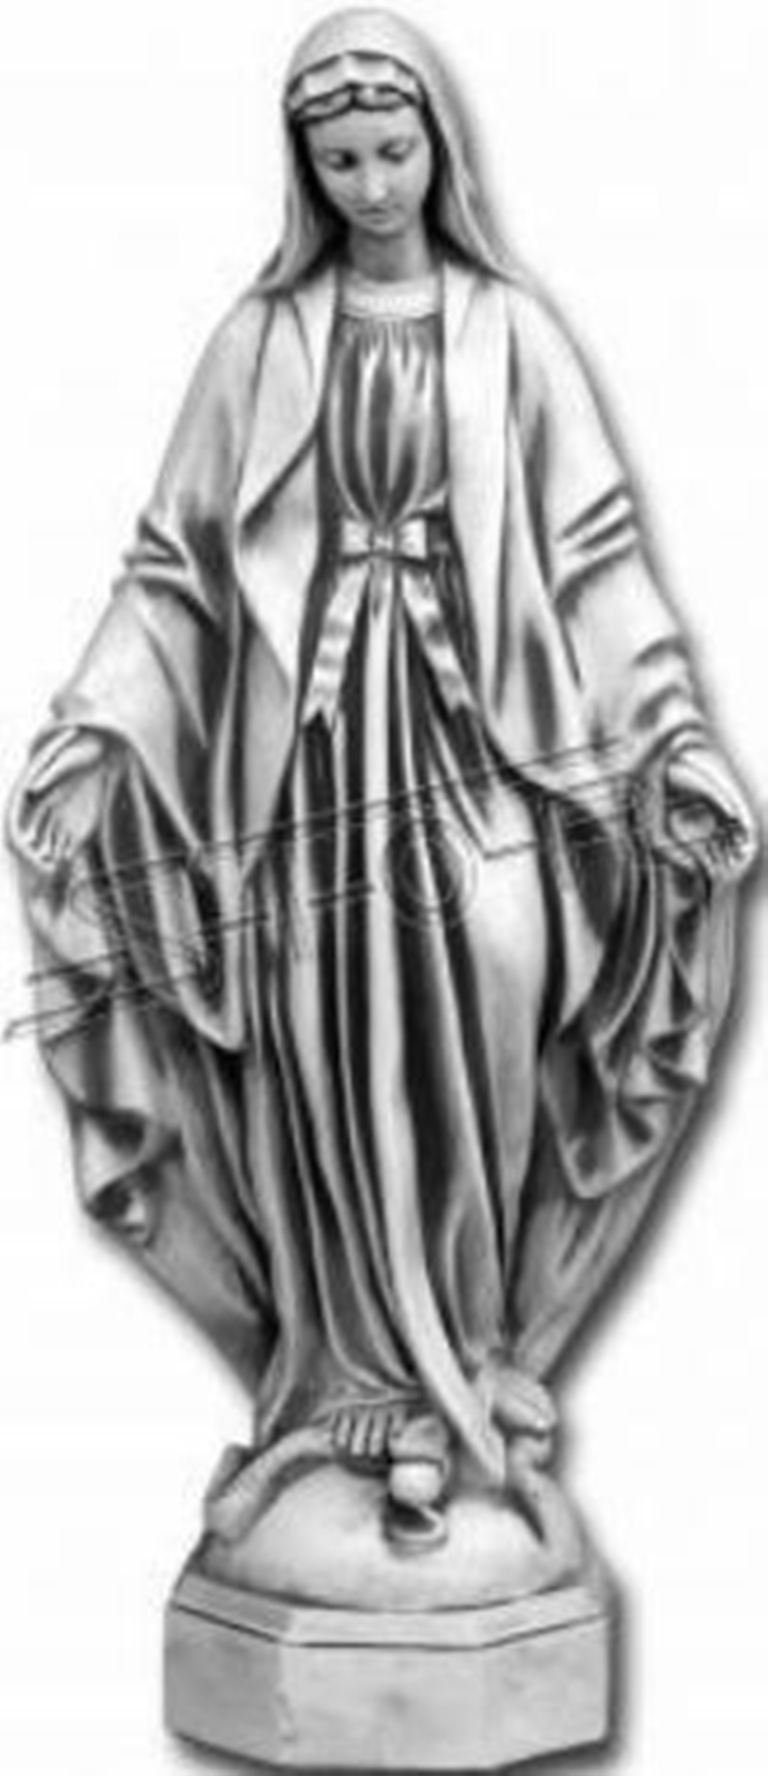 JVmoebel Skulptur Mutter Jesus Deko 118cm Garten Heilige Skulptur Statue S101188 Grab Figur Maria